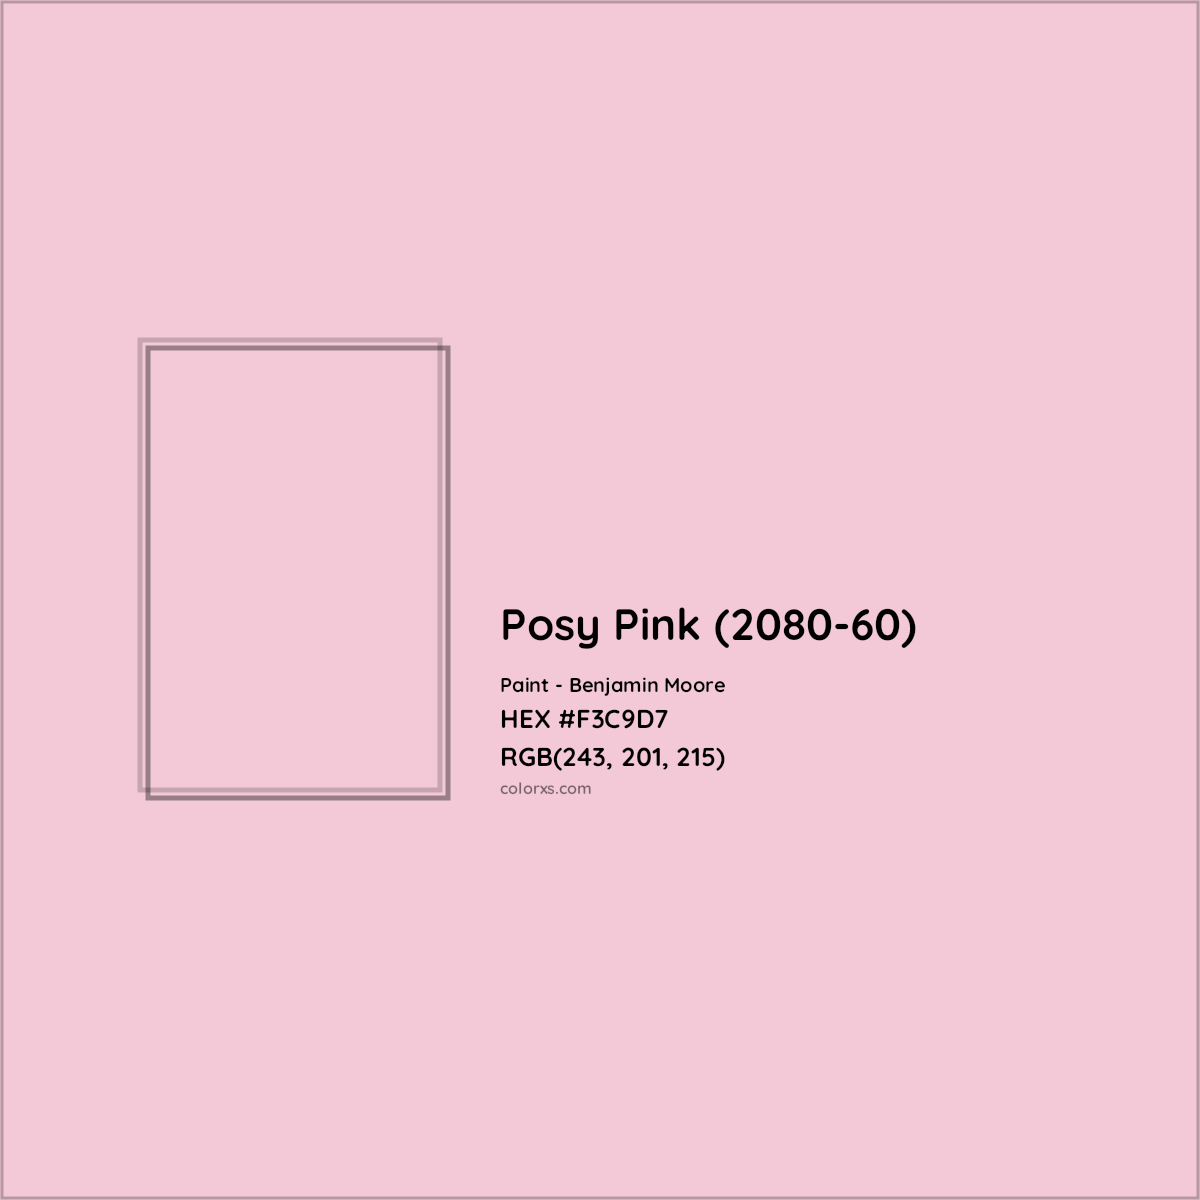 HEX #F3C9D7 Posy Pink (2080-60) Paint Benjamin Moore - Color Code